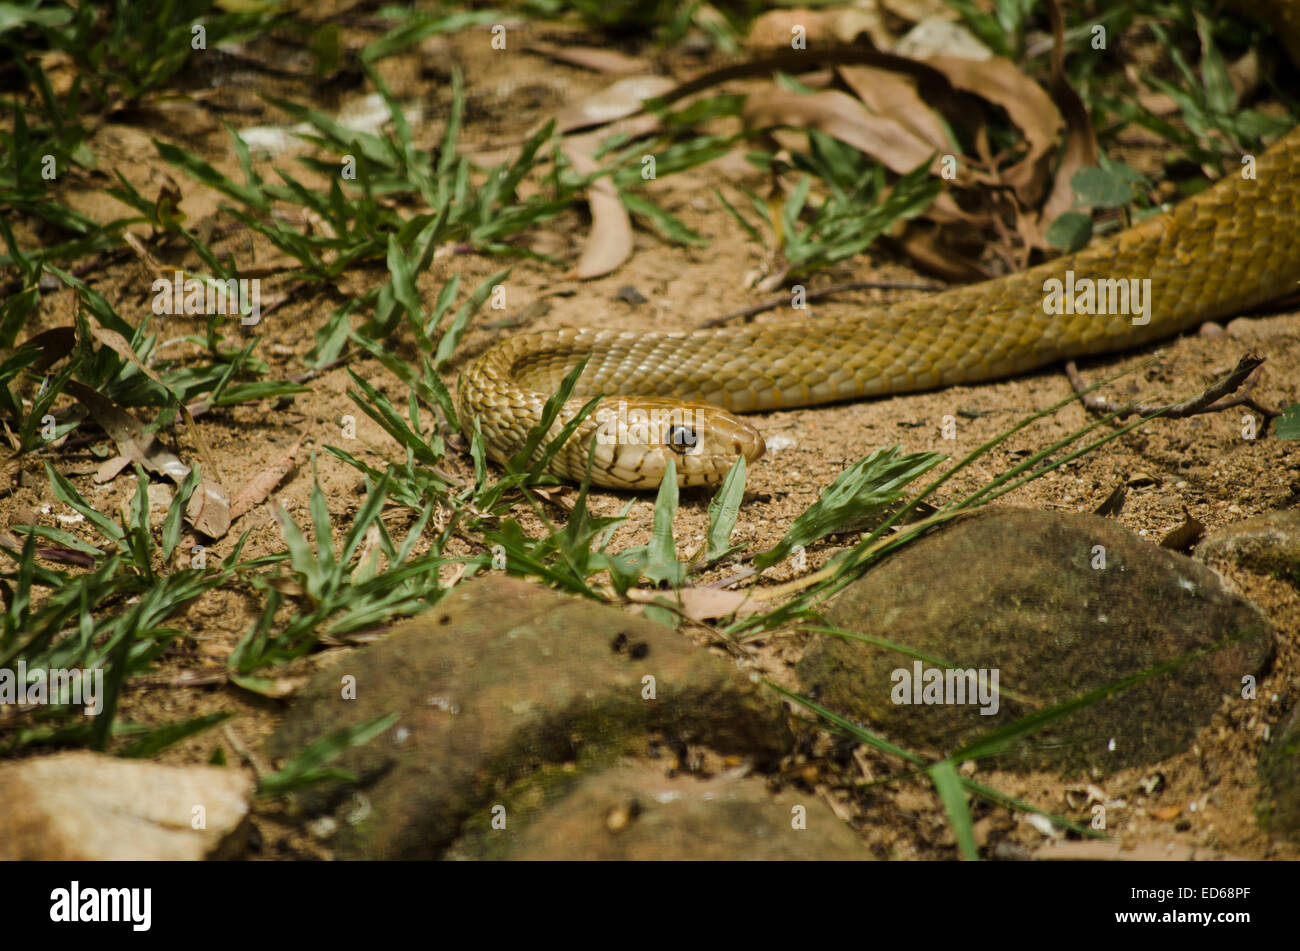 Un arrastras rat snake en movimiento sobre el suelo. Foto de stock